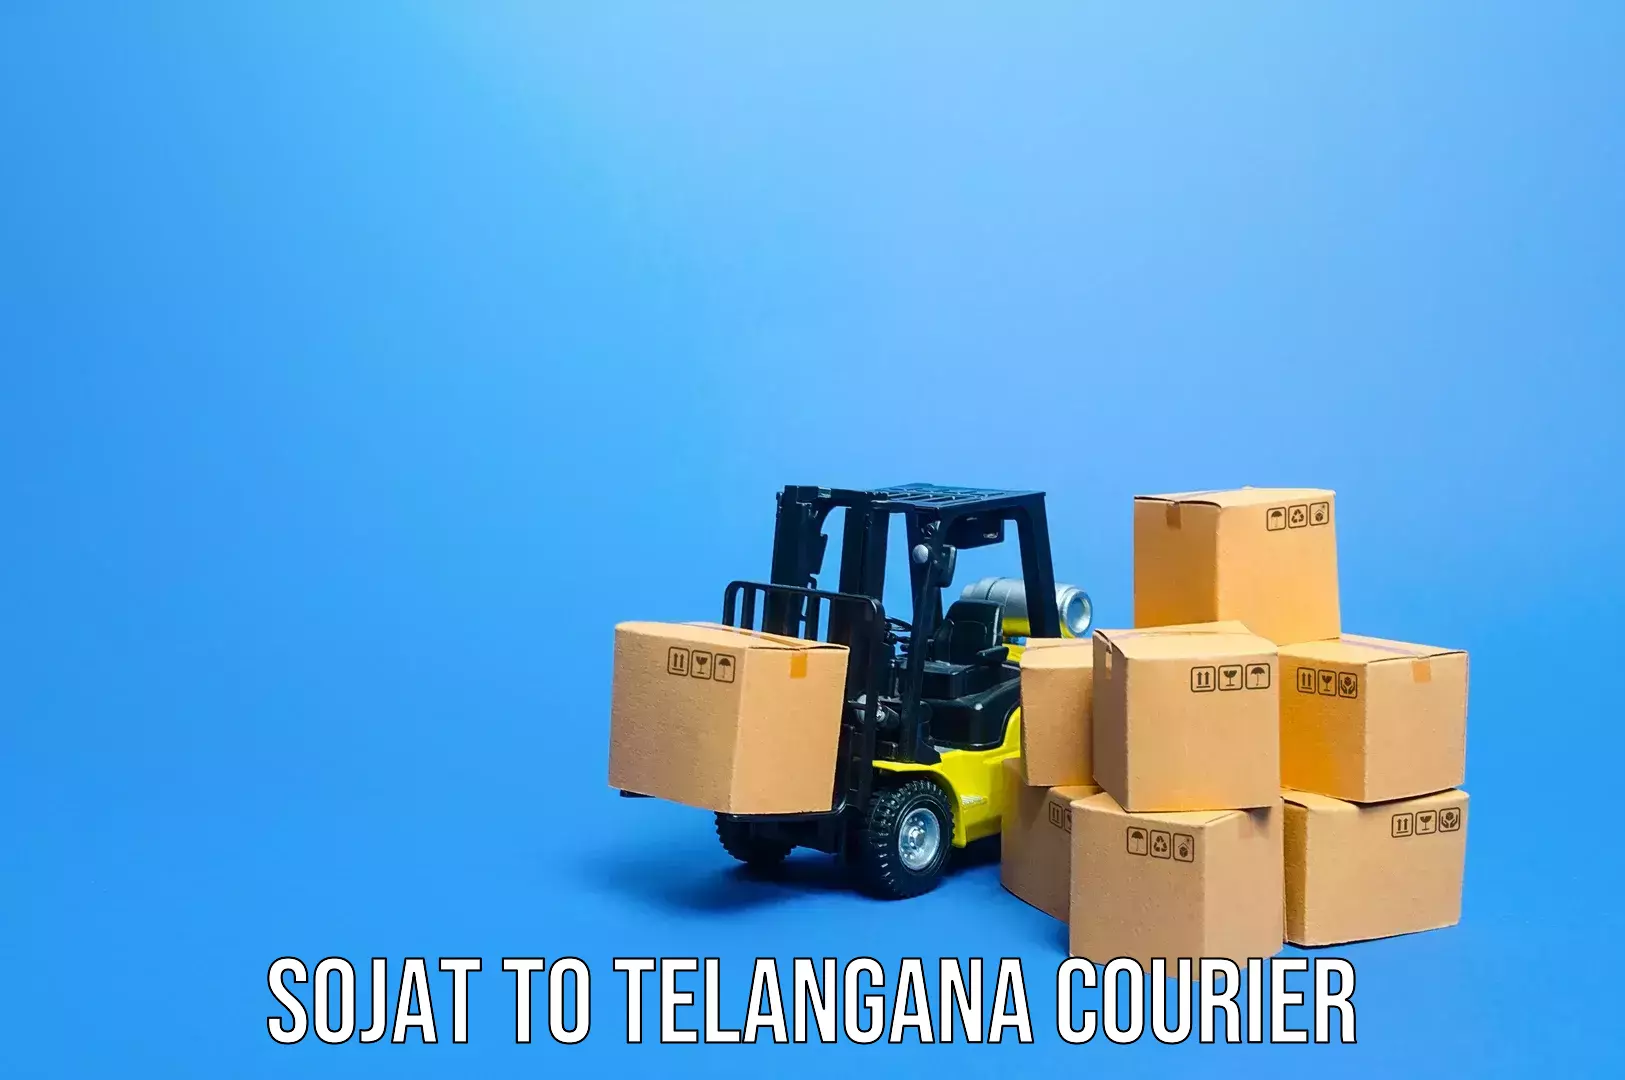 Baggage transport management Sojat to Telangana